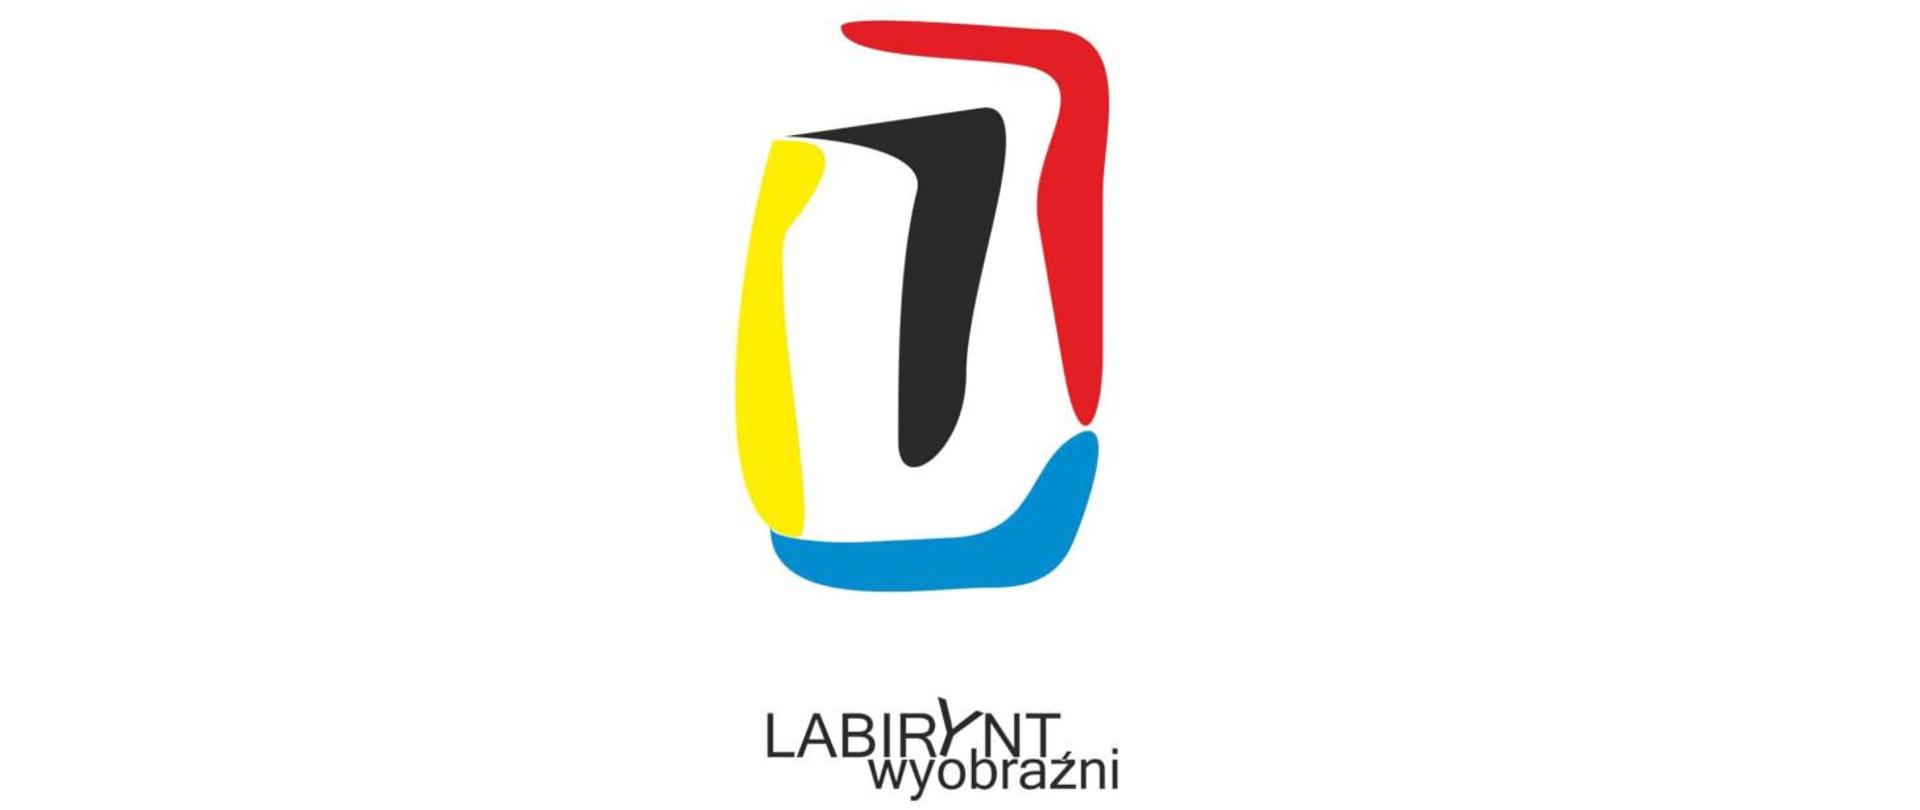 Logo złożone z czterech kolorowych elementów w kształcie liter L. pod logiem napis labirynt wyobraźni. 